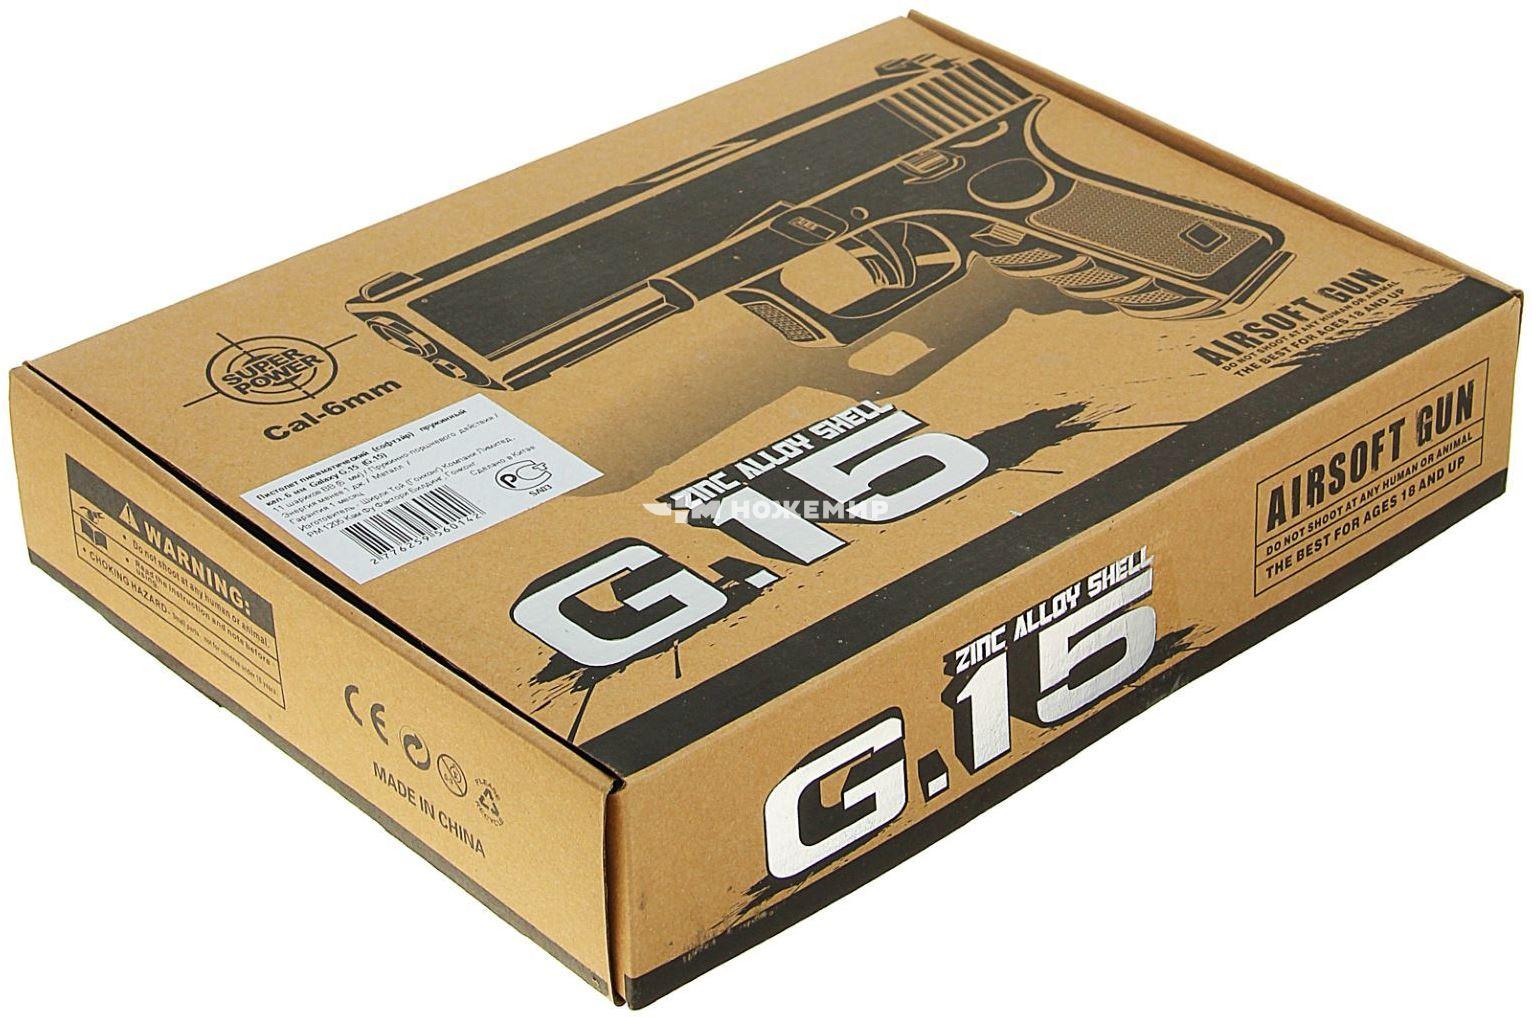 Страйкбольный пистолет пружинный Glock 23 Galaxy G15